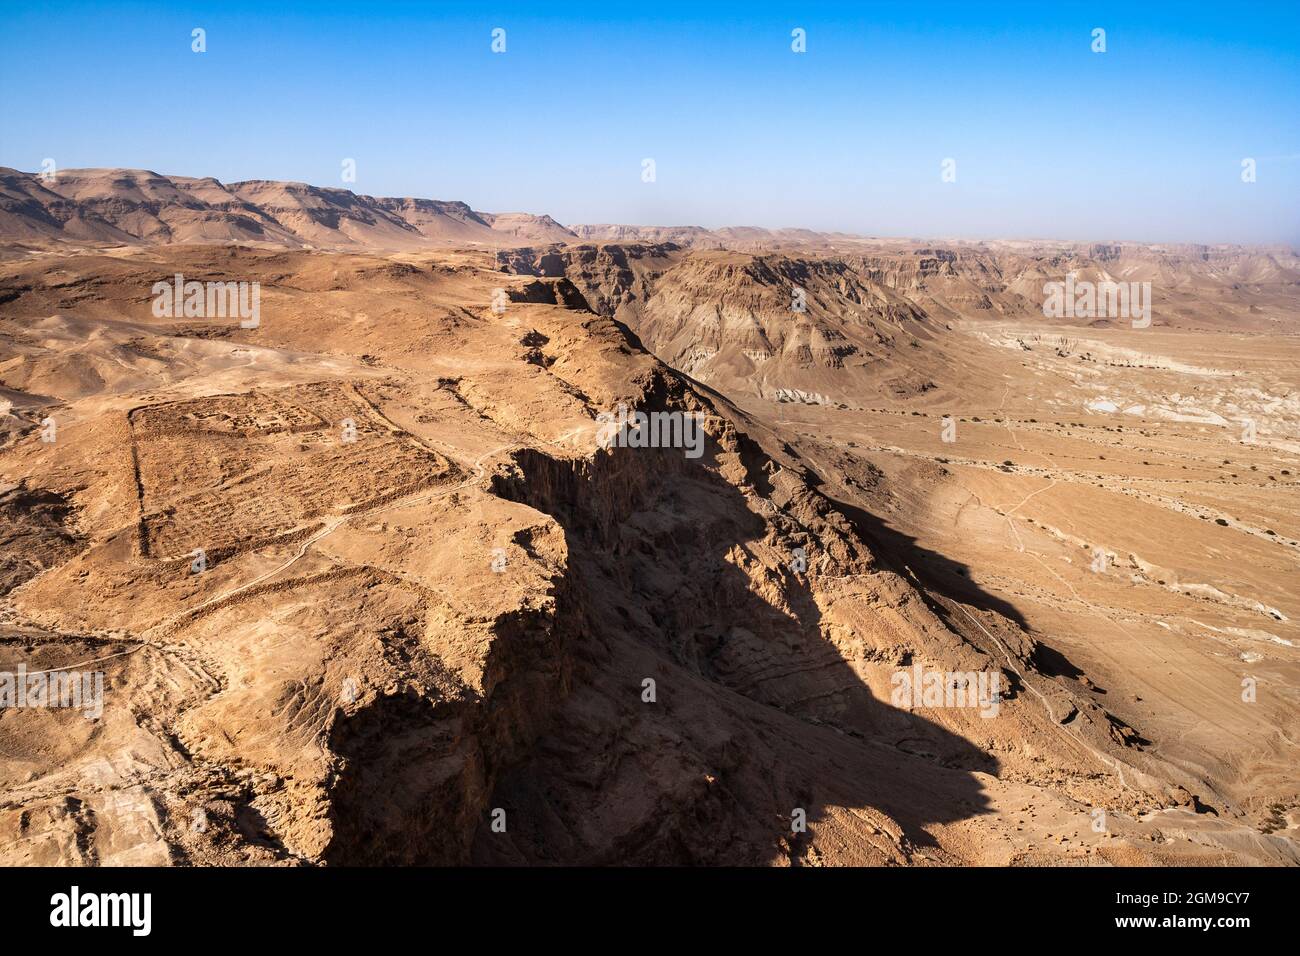 Ruines du camp romain du siège de Masada vues de Masada dans le désert du Néguev, Israël Banque D'Images